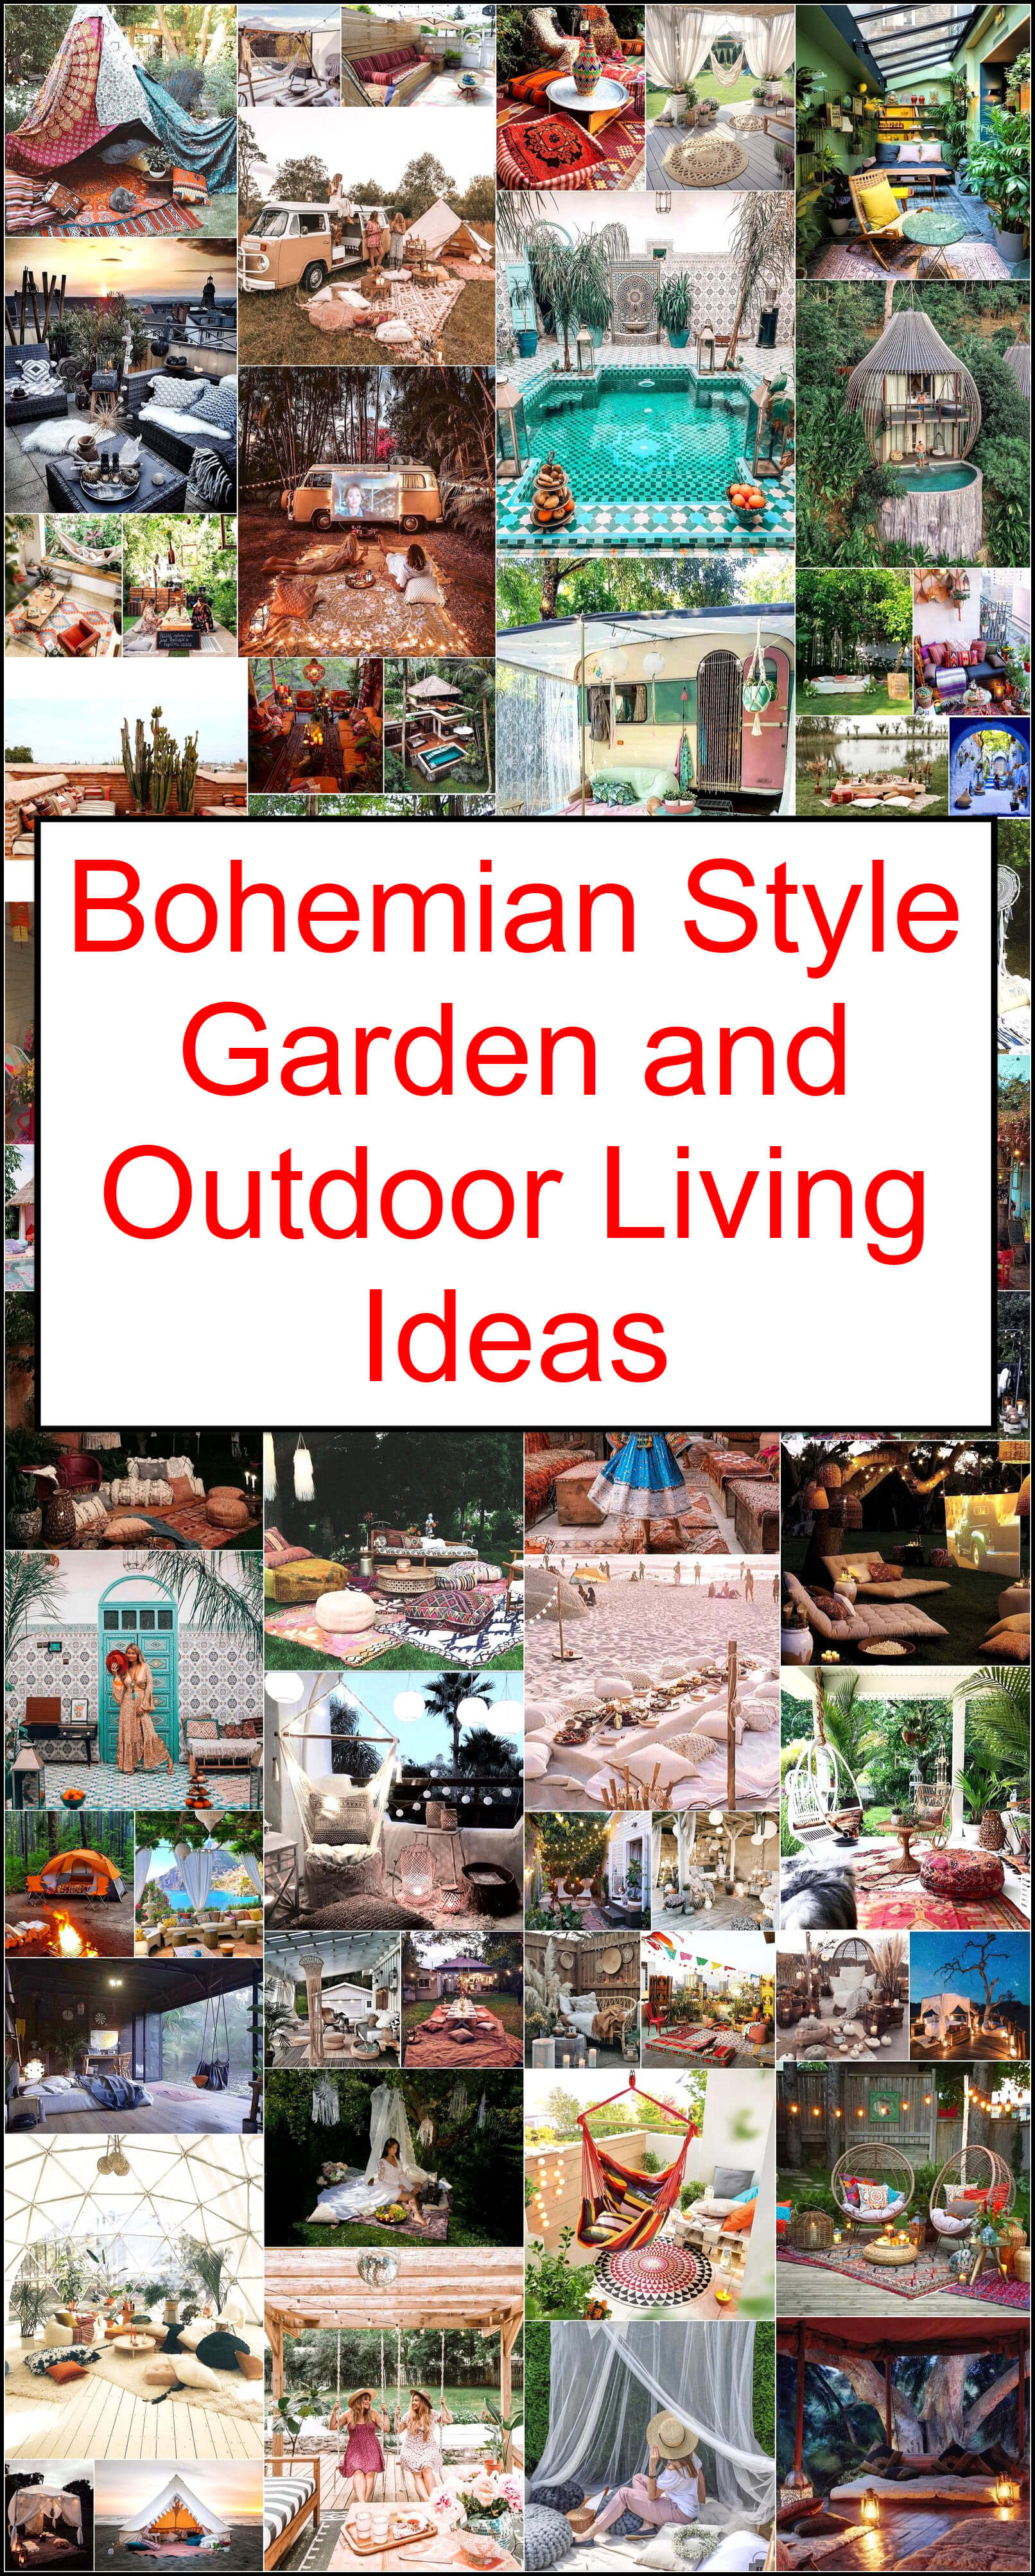 Bohemian Style Garden and Outdoor Living Ideas